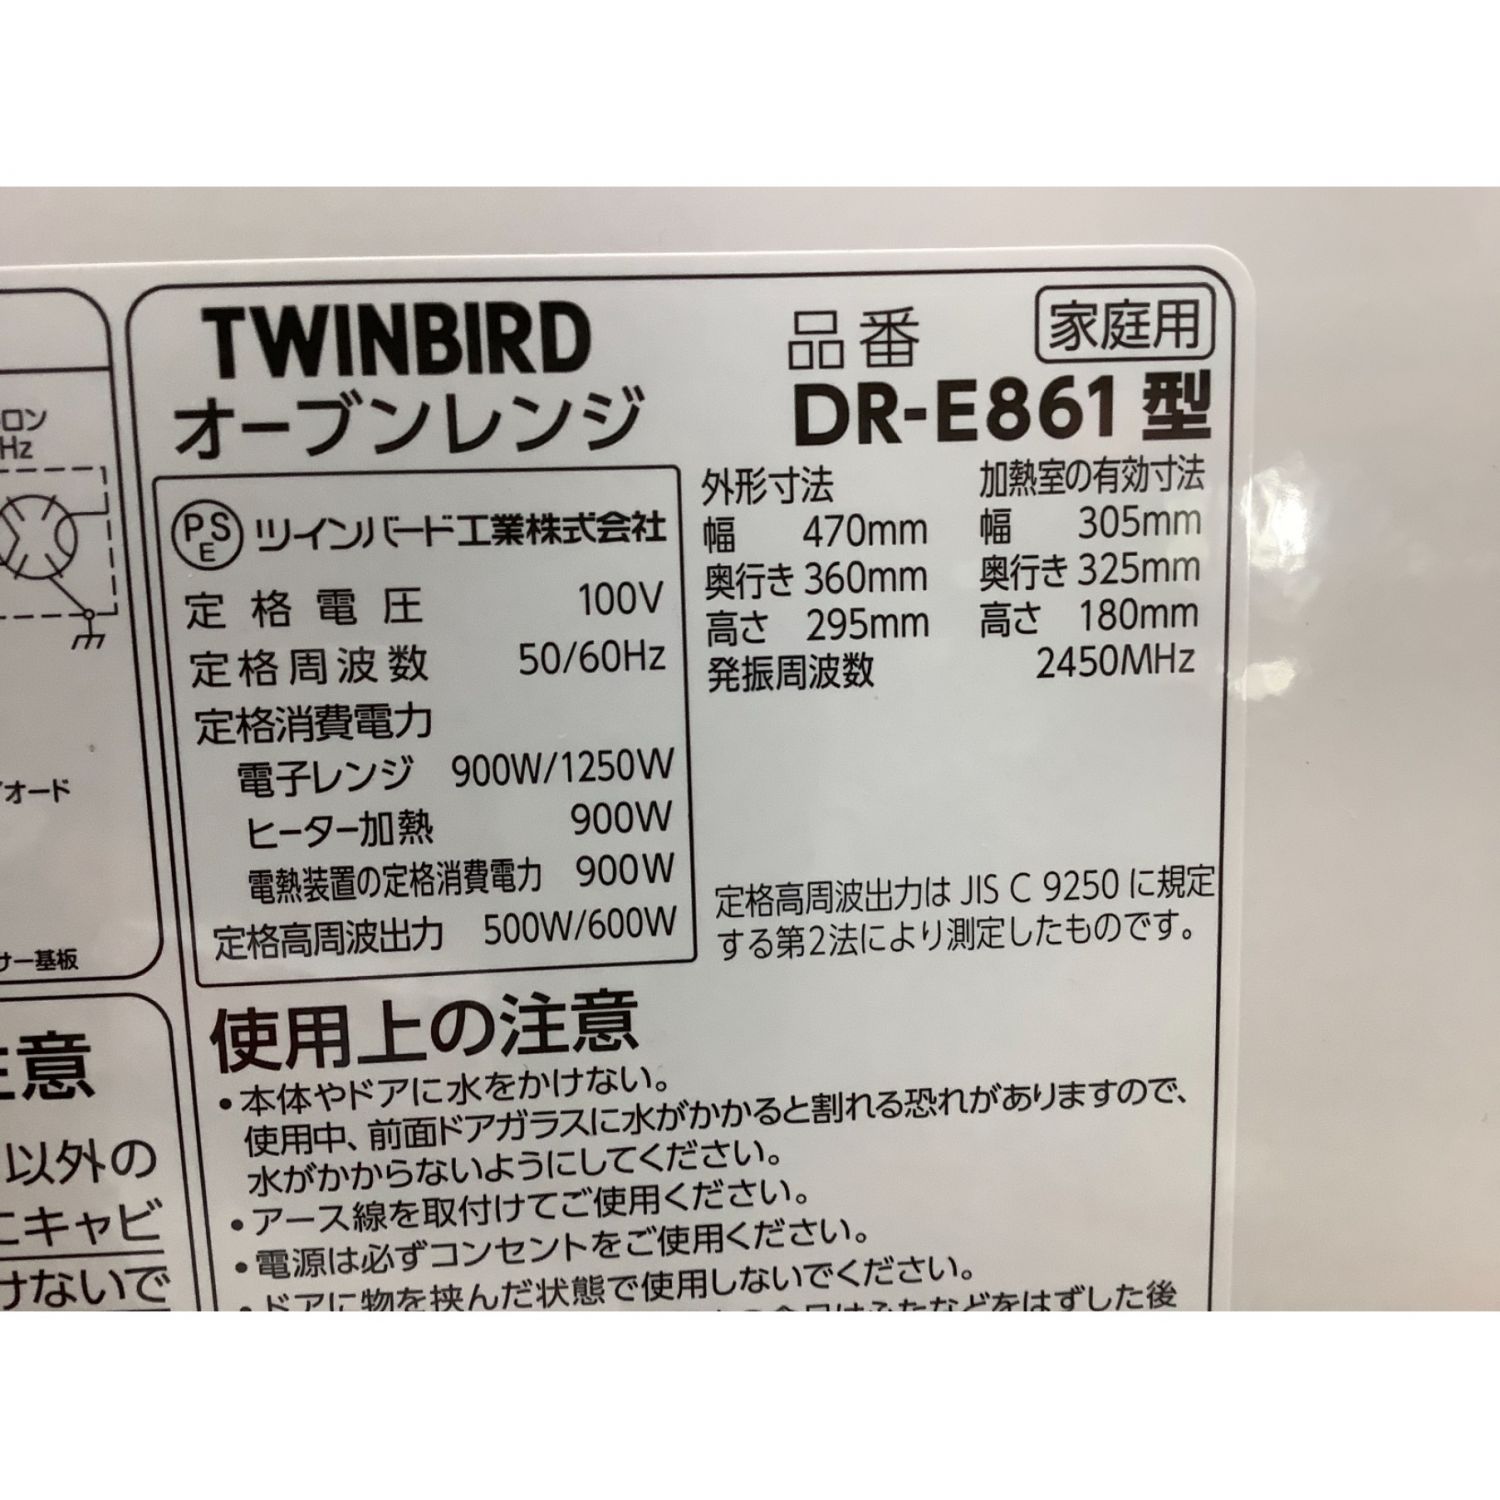 TWINBIRD DR-E861 オーブンレンジ - 電子レンジ/オーブン